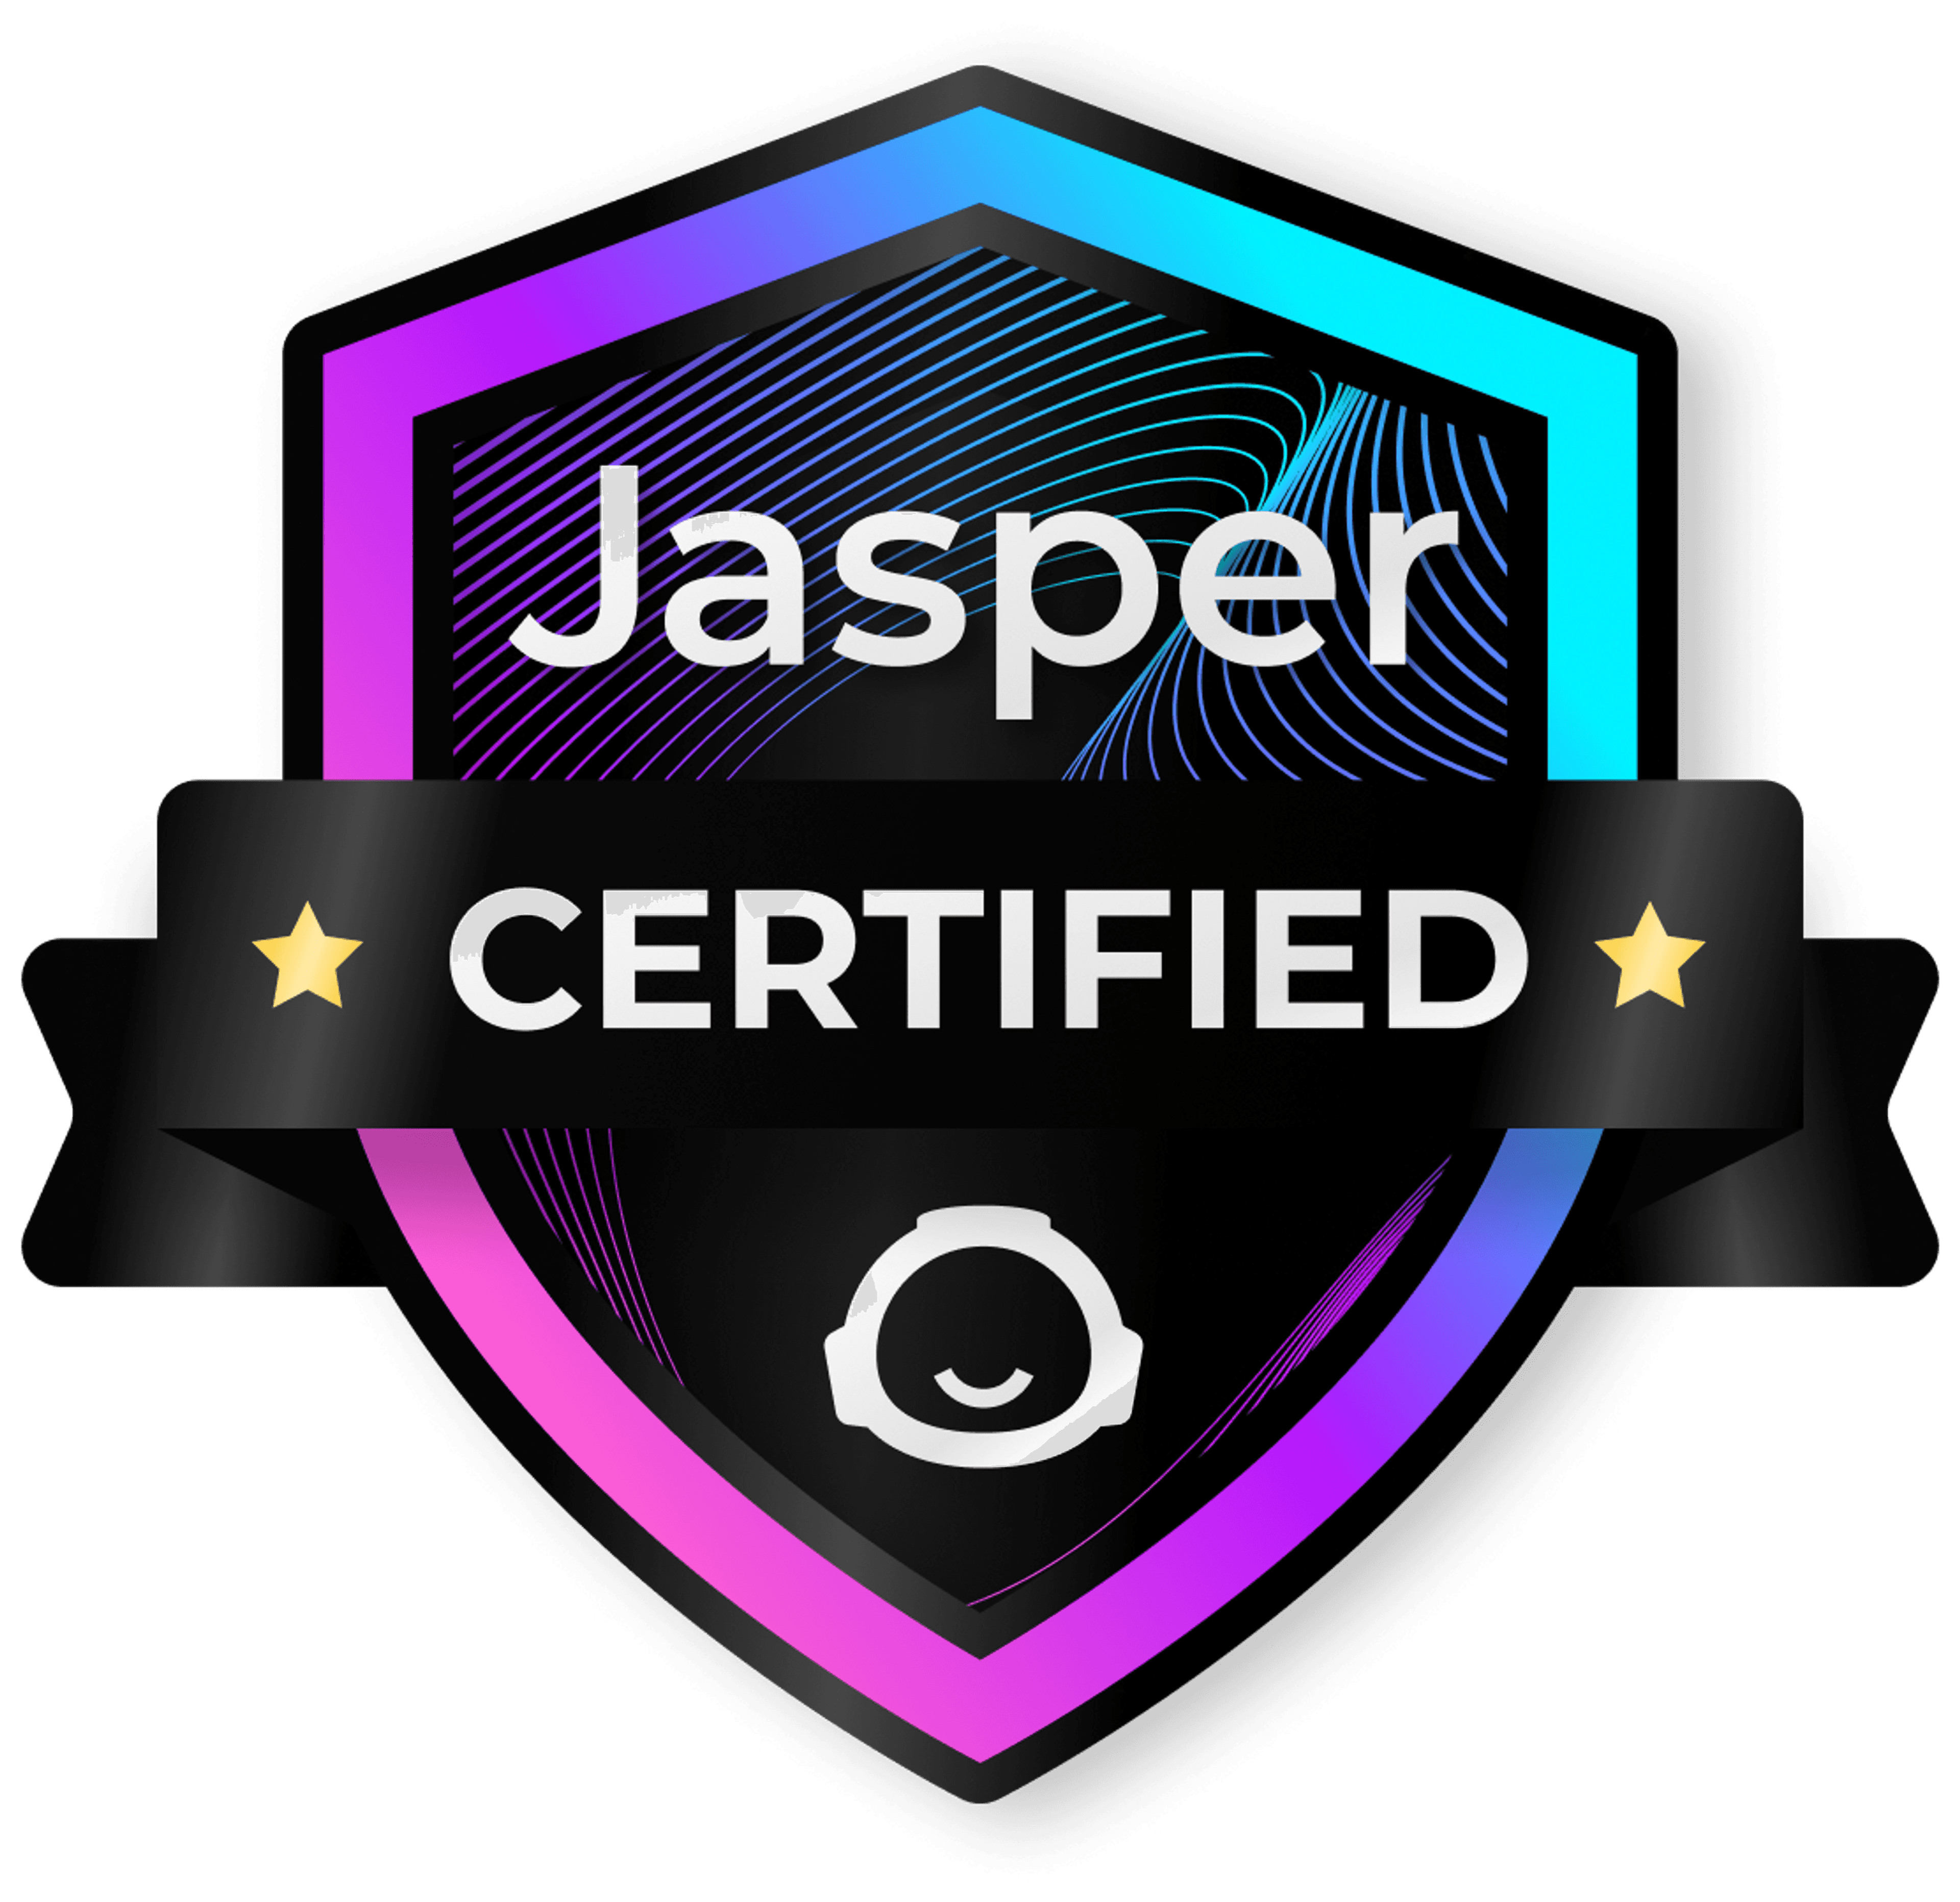 Jasper certificate